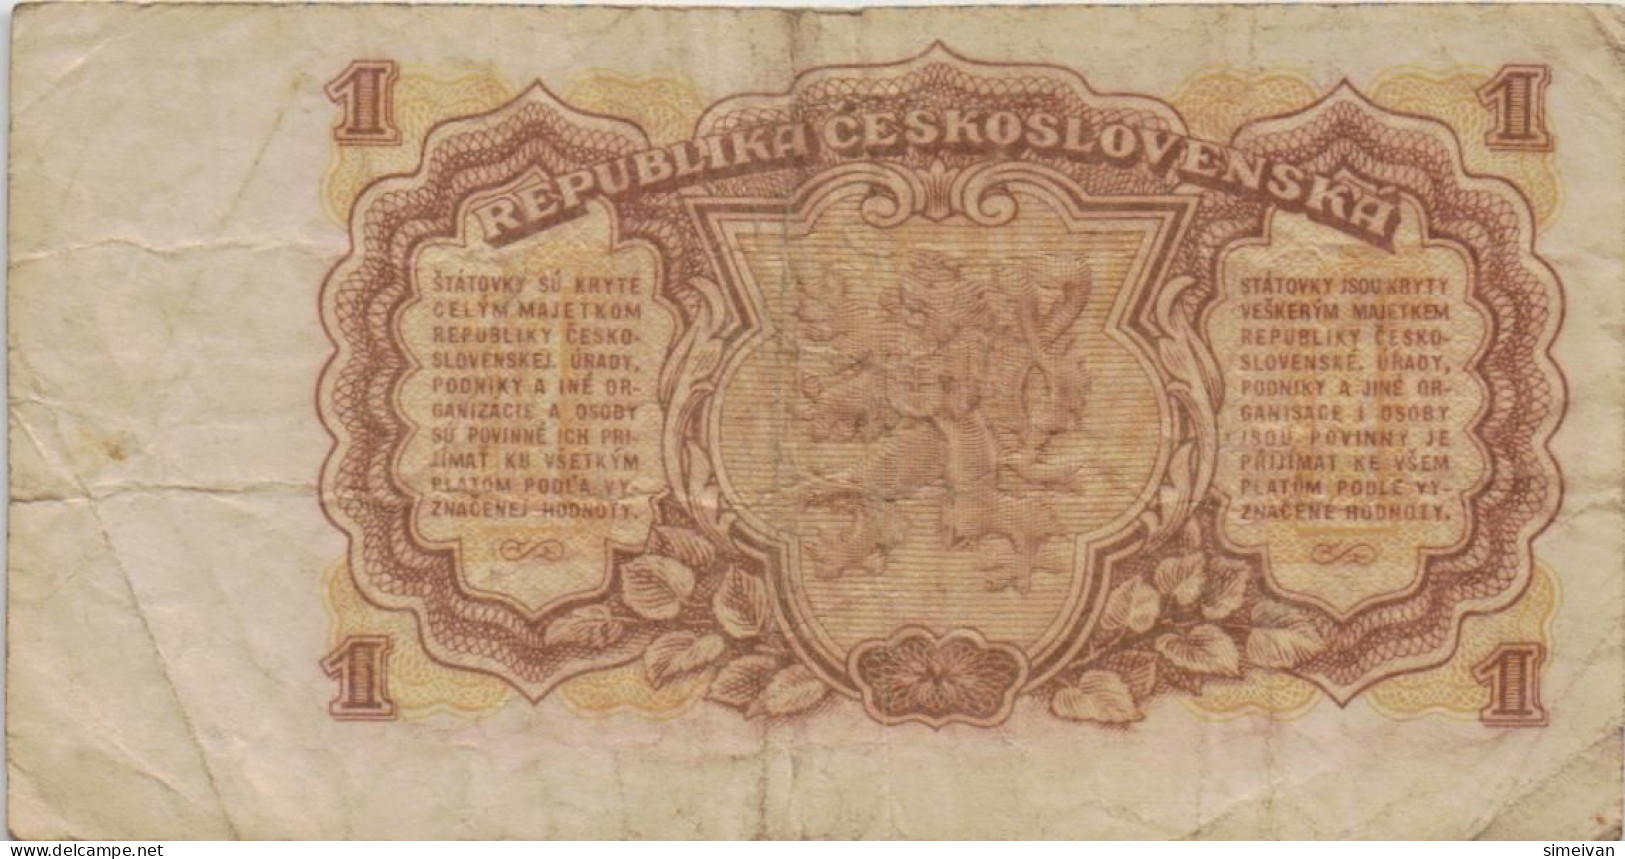 Czechoslovakia 1 Koruna 1953 P-78b Banknote Europe Currency Tchécoslovaquie Tschechoslowakei #5231 - Cecoslovacchia